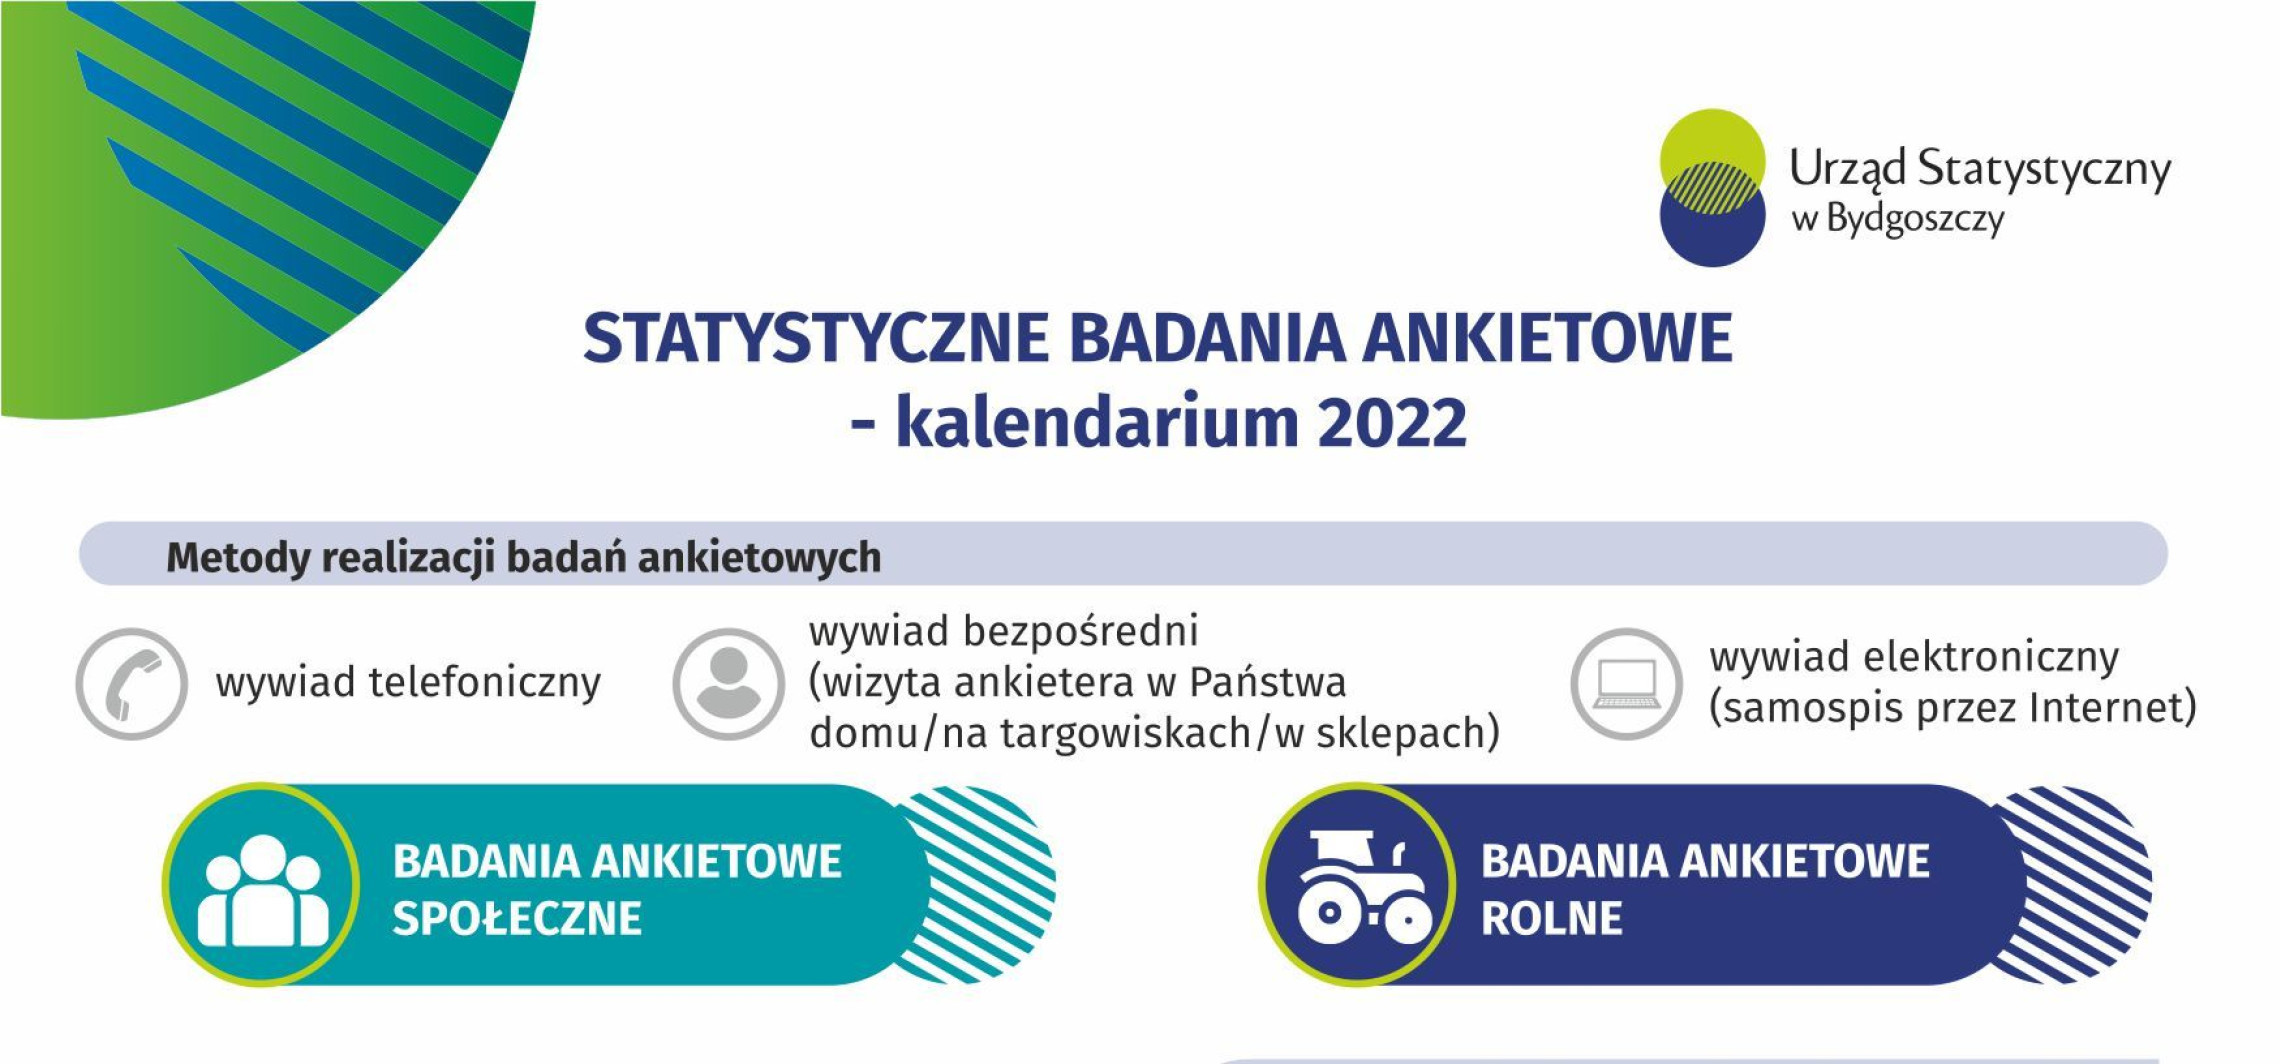 Inowrocław - Badania ankietowe w 2022 r. O co będą pytać?